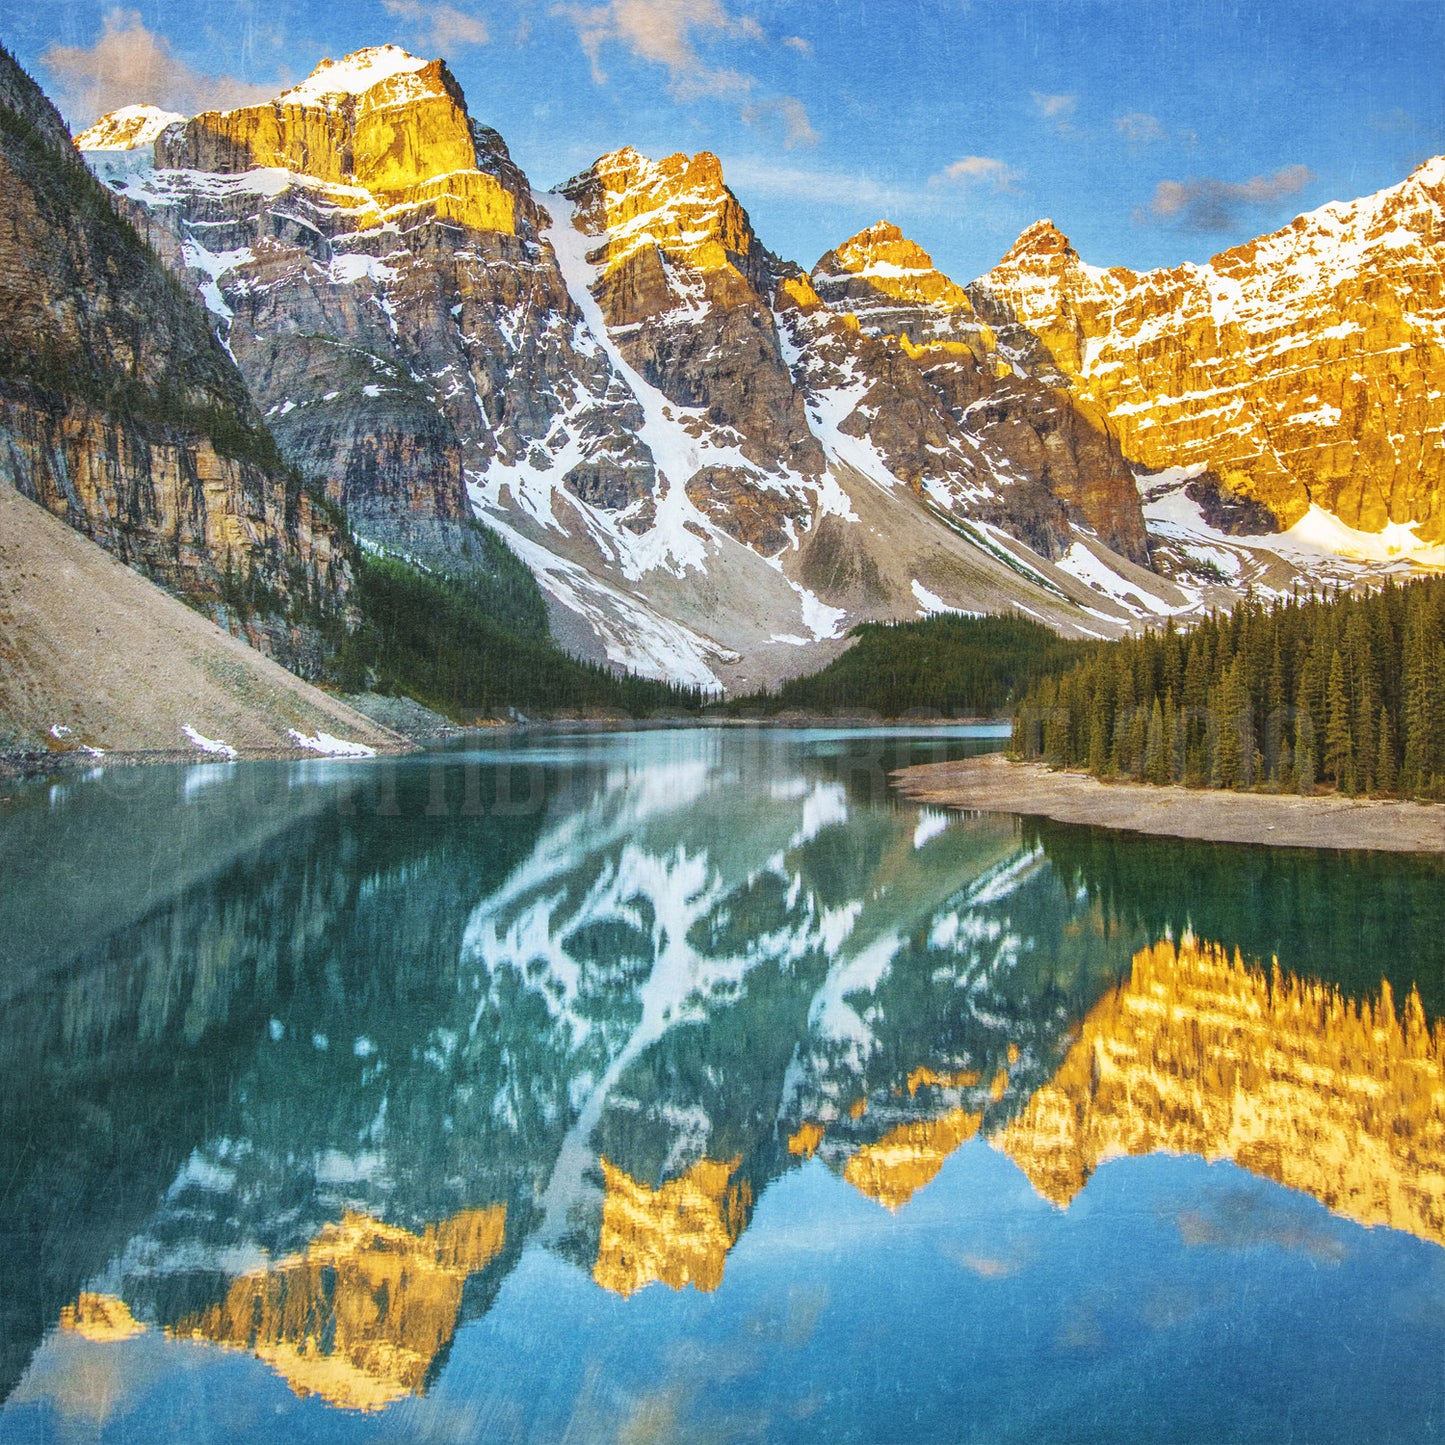 Lago Moraine Primavera Amanecer Parque Nacional Banff<br> Impresión cromogénica de bellas artes de archivo